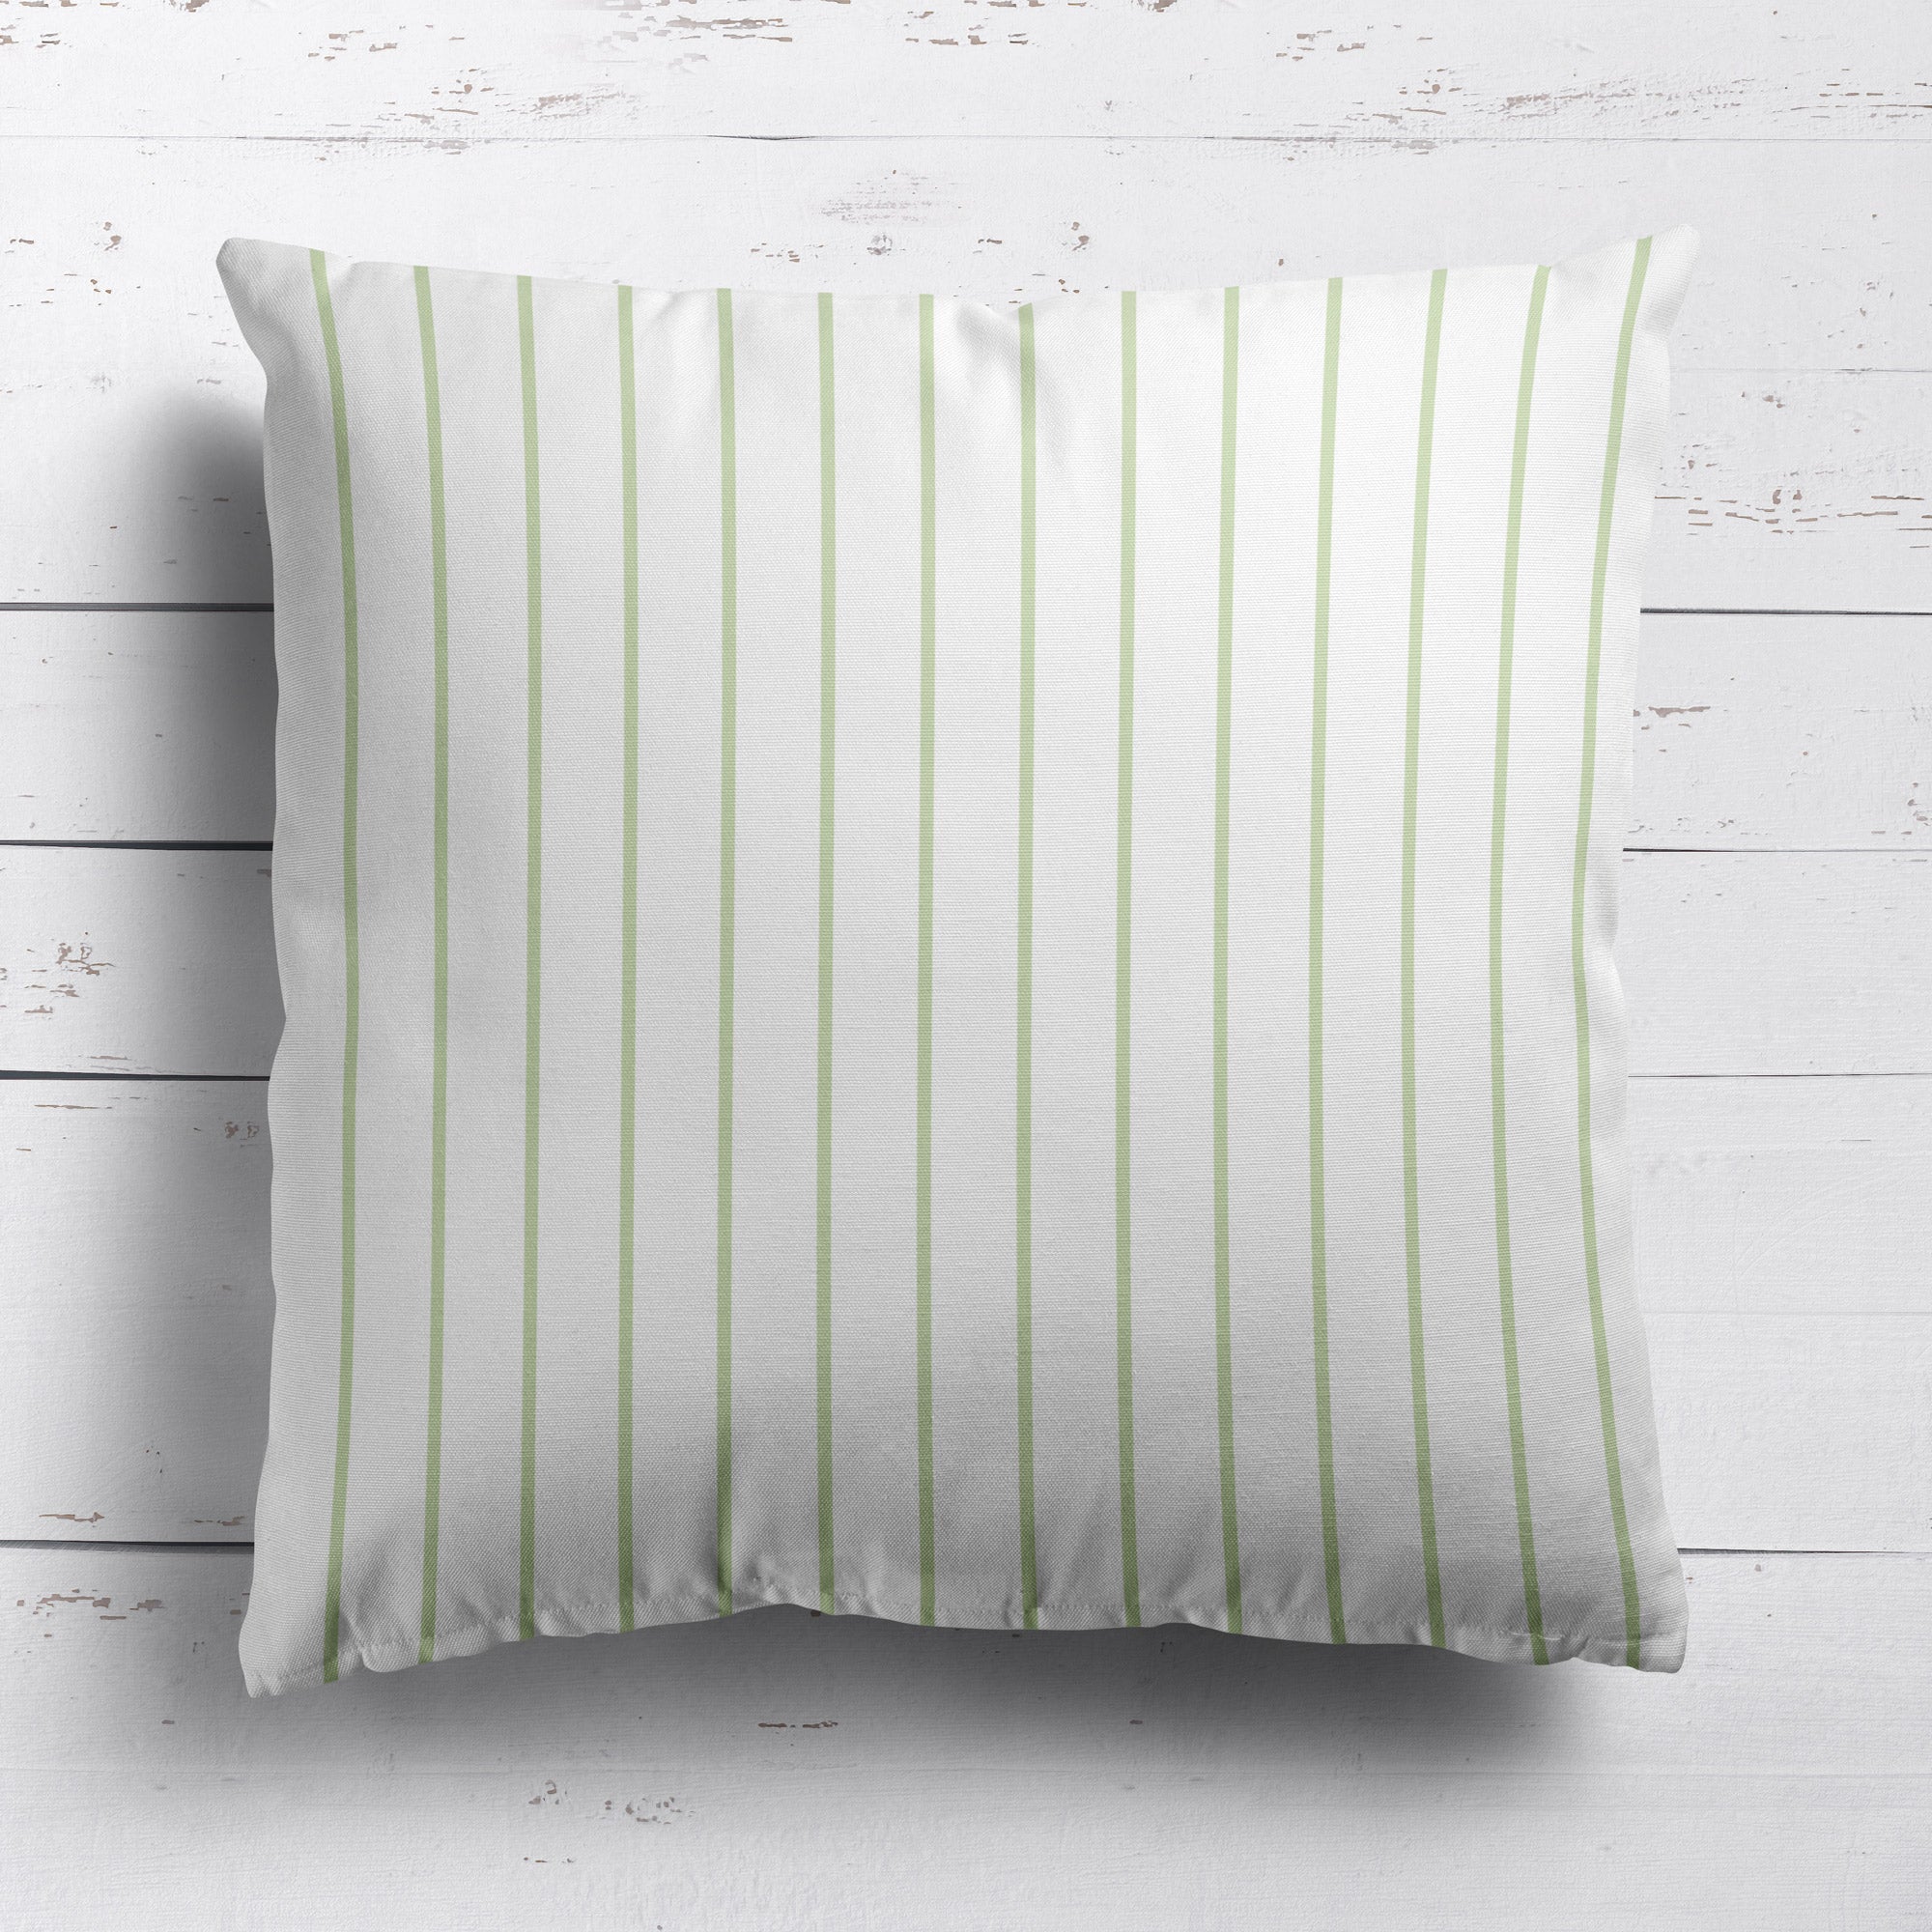 Breton Stripe cotton linen cushion in Elderflower green